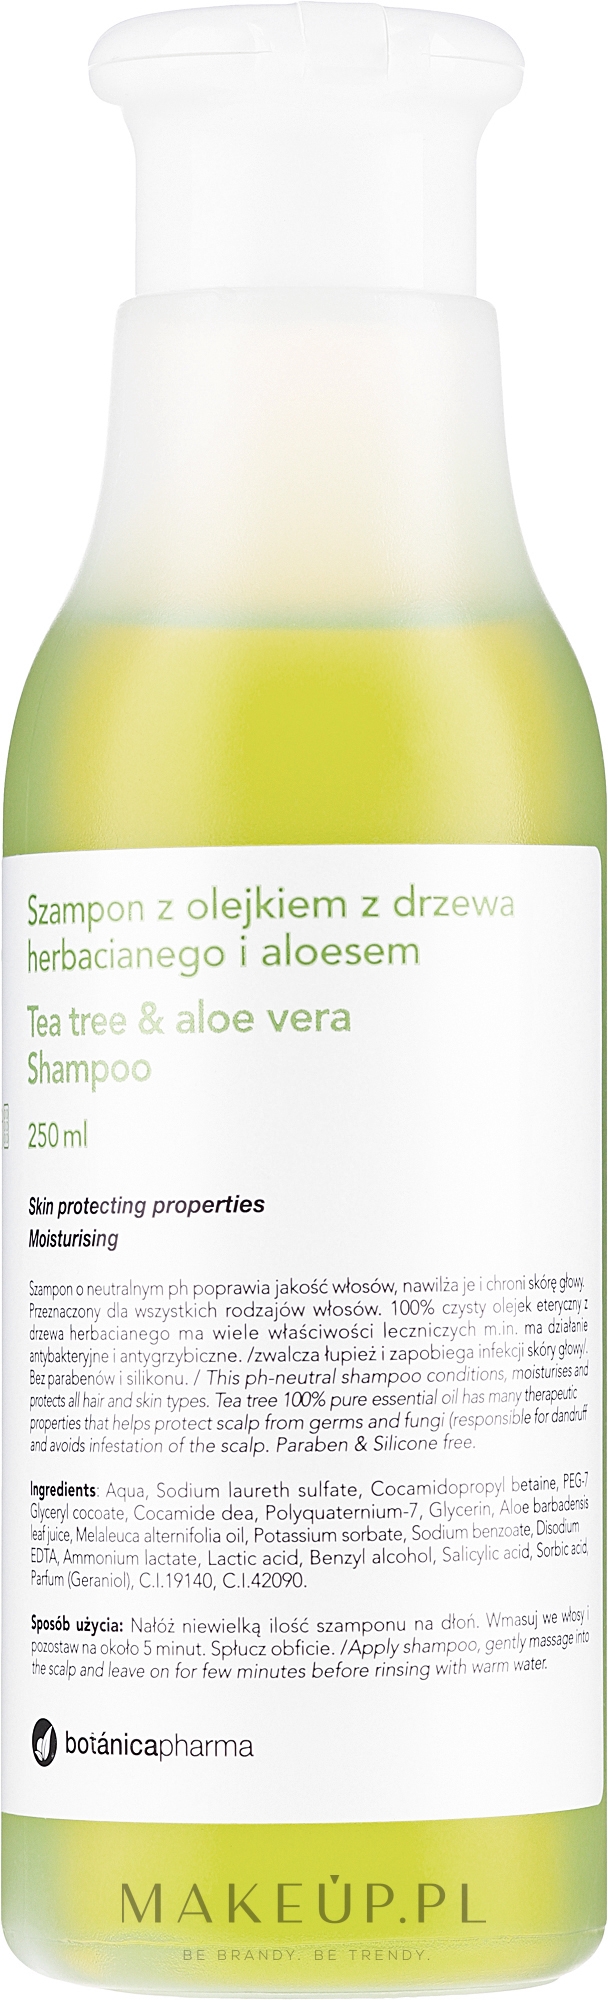 Szampon do włosów z olejkiem z drzewa herbacianego i aloesem - Botanicapharma Tee Tree & Aloe Shampoo — Zdjęcie 250 ml